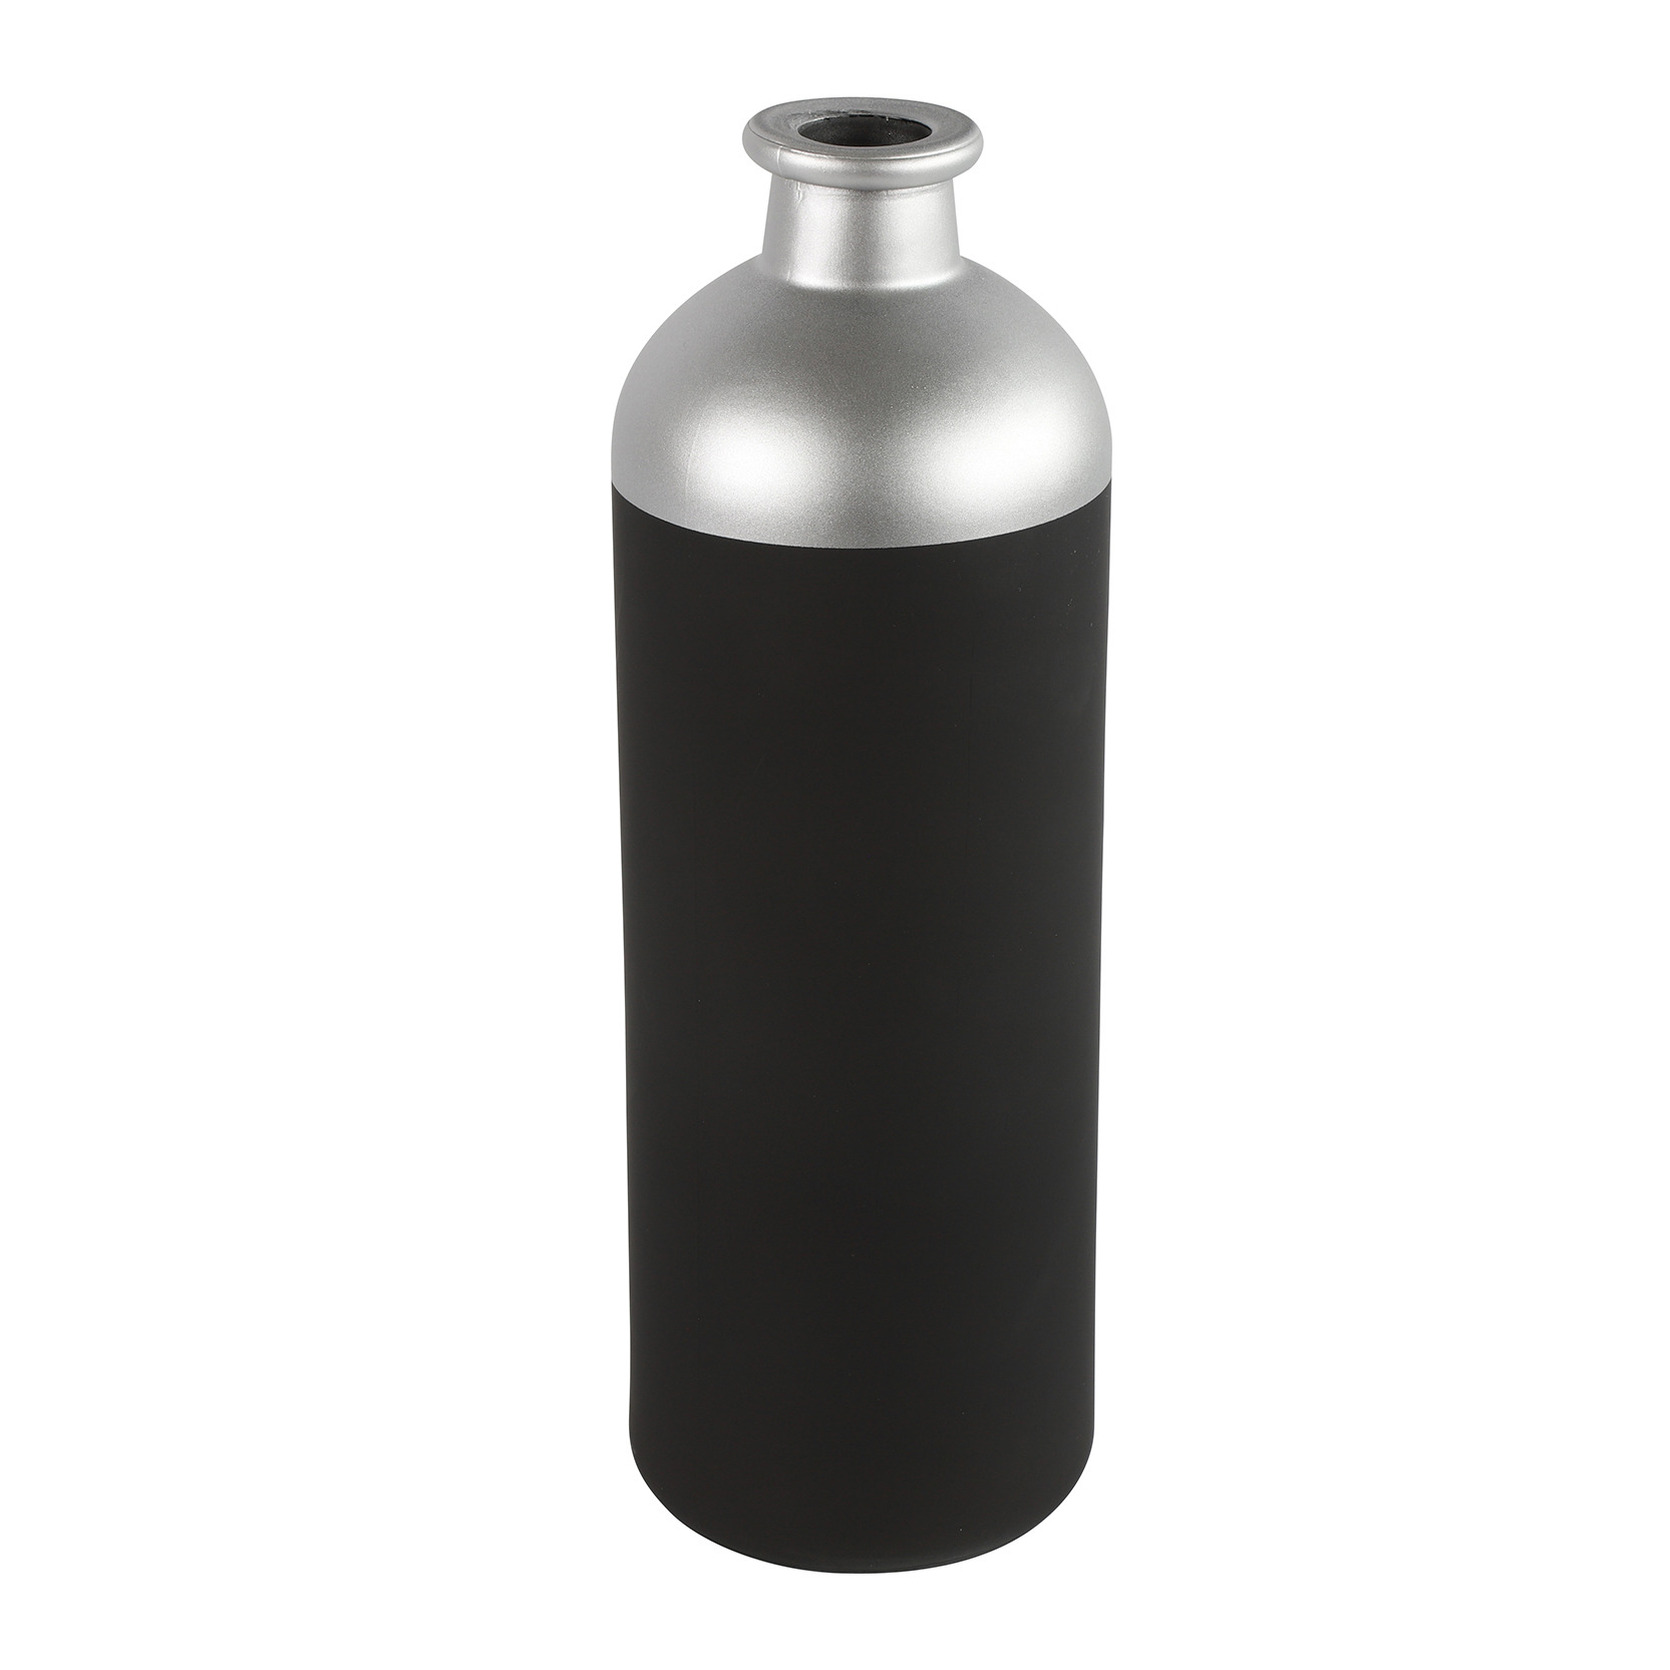 Countryfield Bloemen of deco vaas - zwart/zilver - glas - luxe fles vorm - D11 x H33 cm -